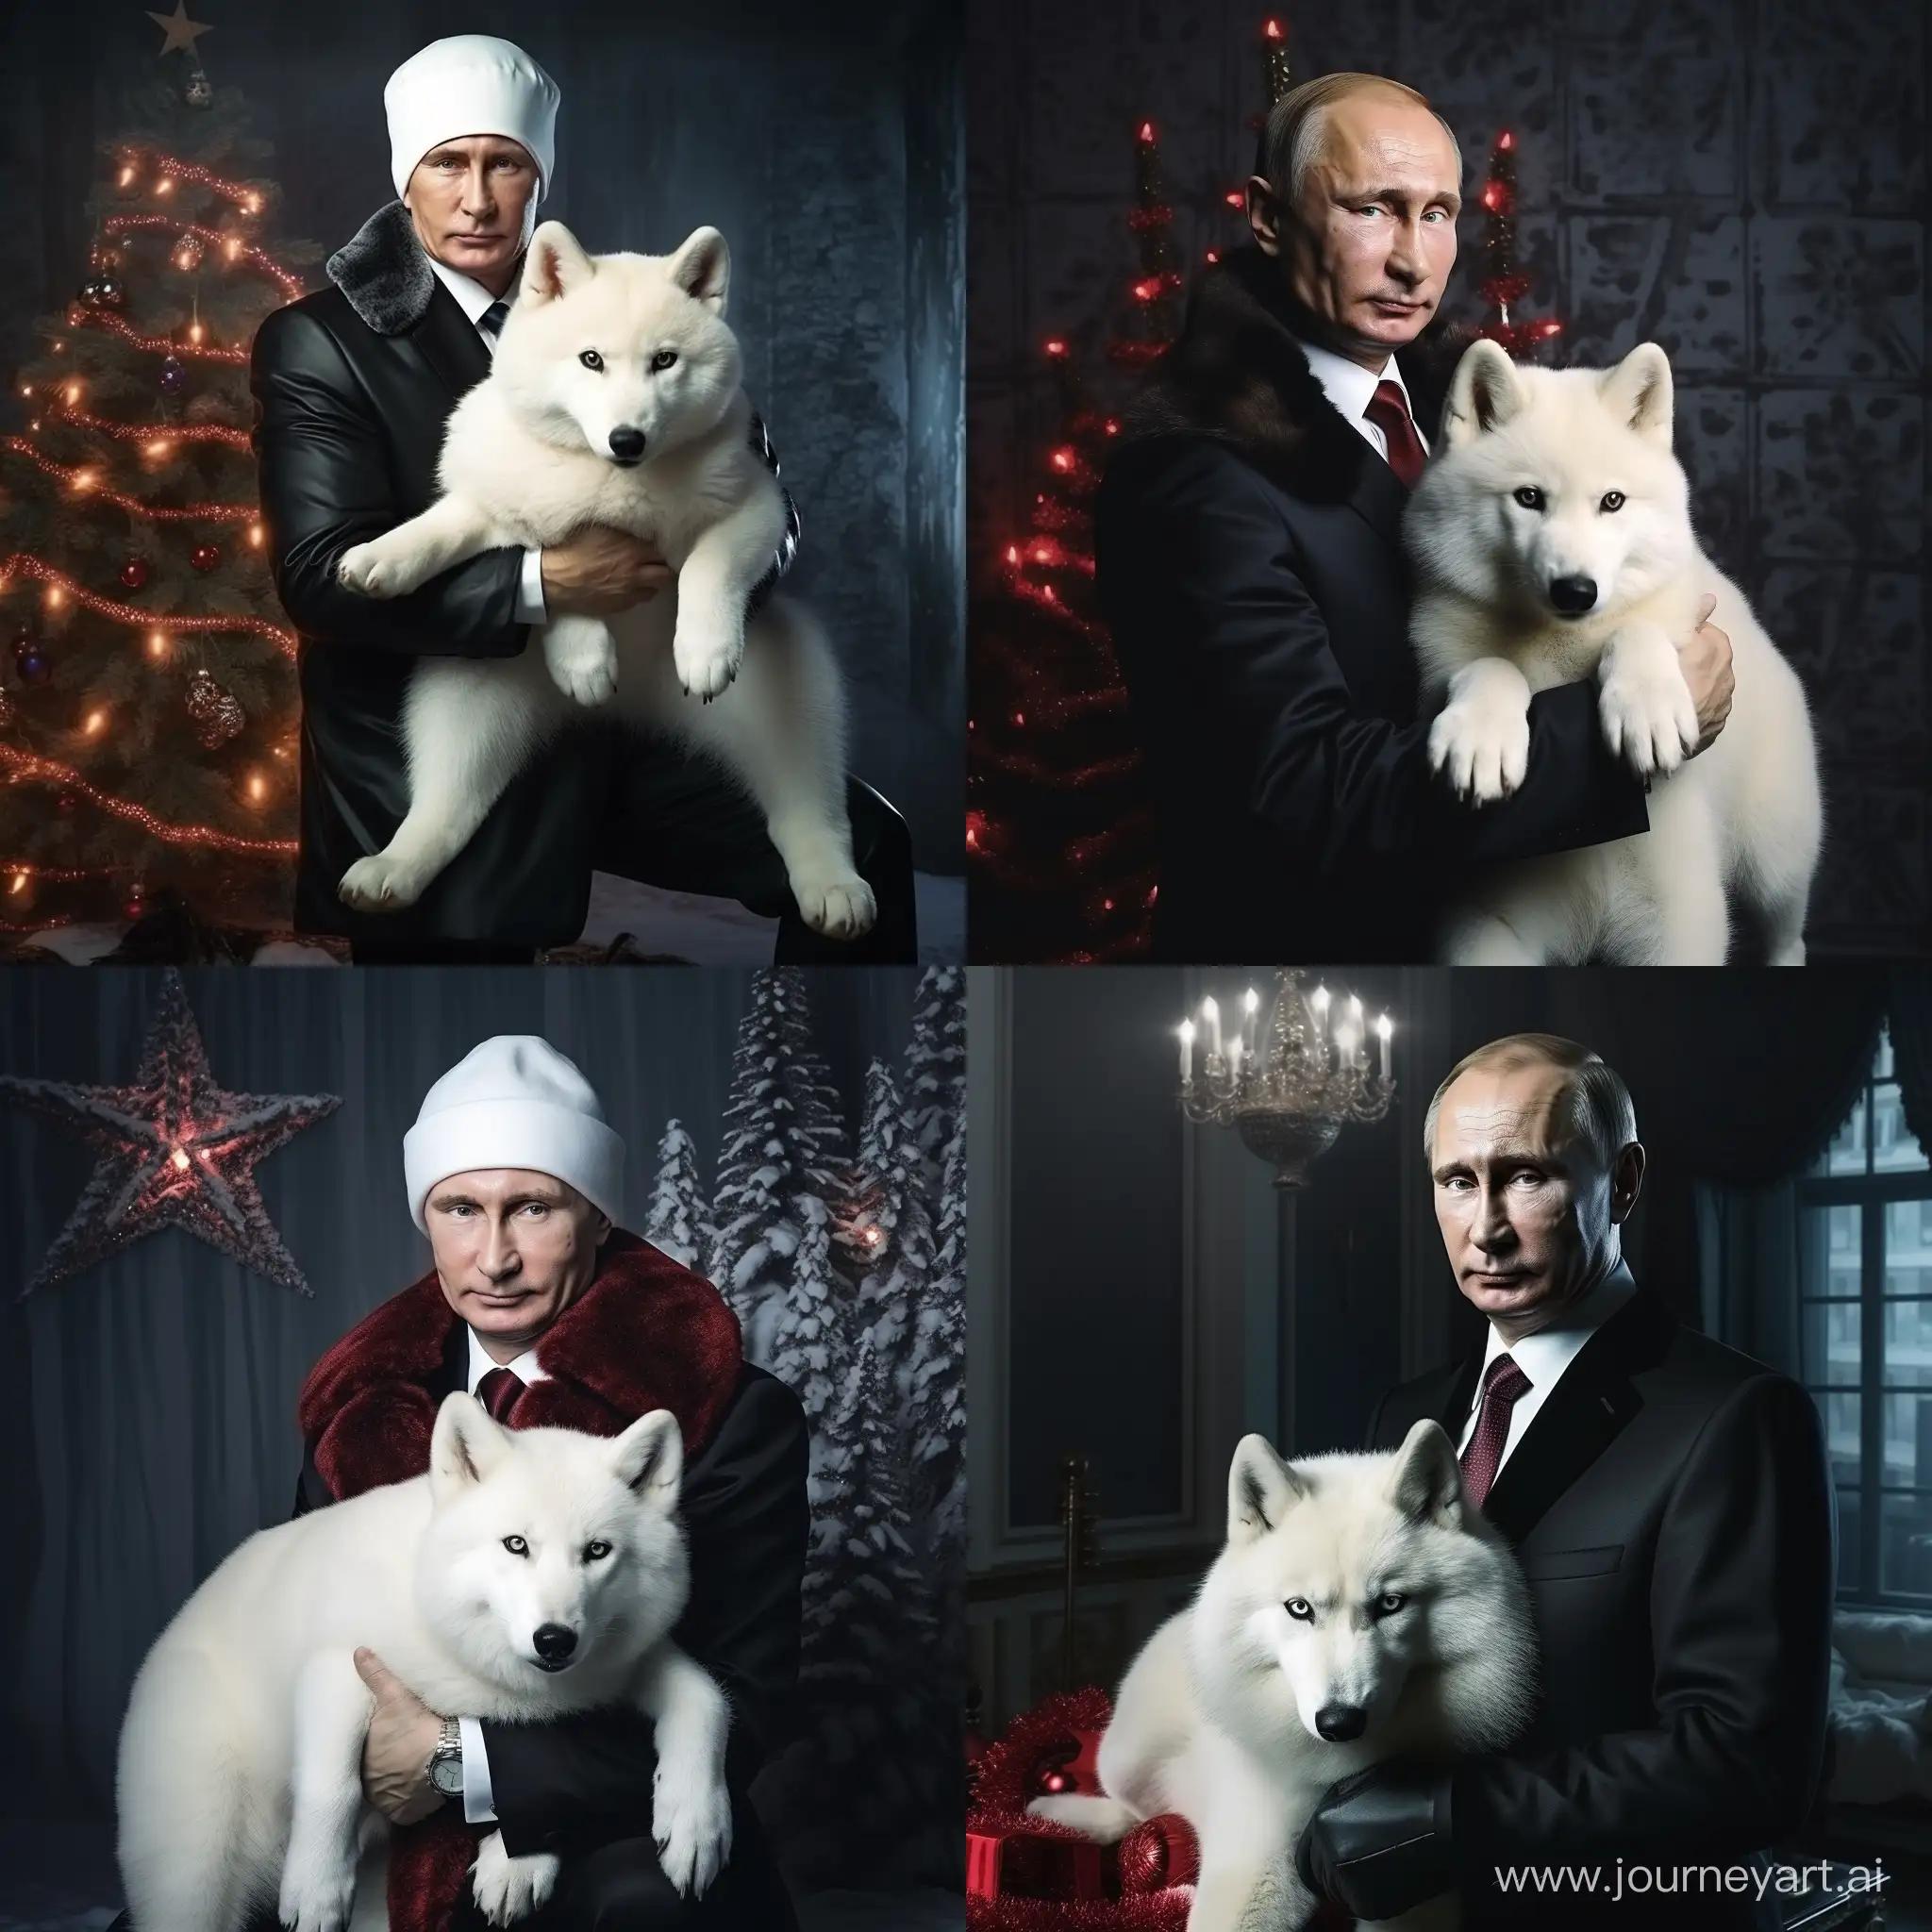 Vladimir-Putin-in-Santa-Claus-Hat-with-Arctic-Fox-Festive-Portrait-in-Cinematic-Lighting